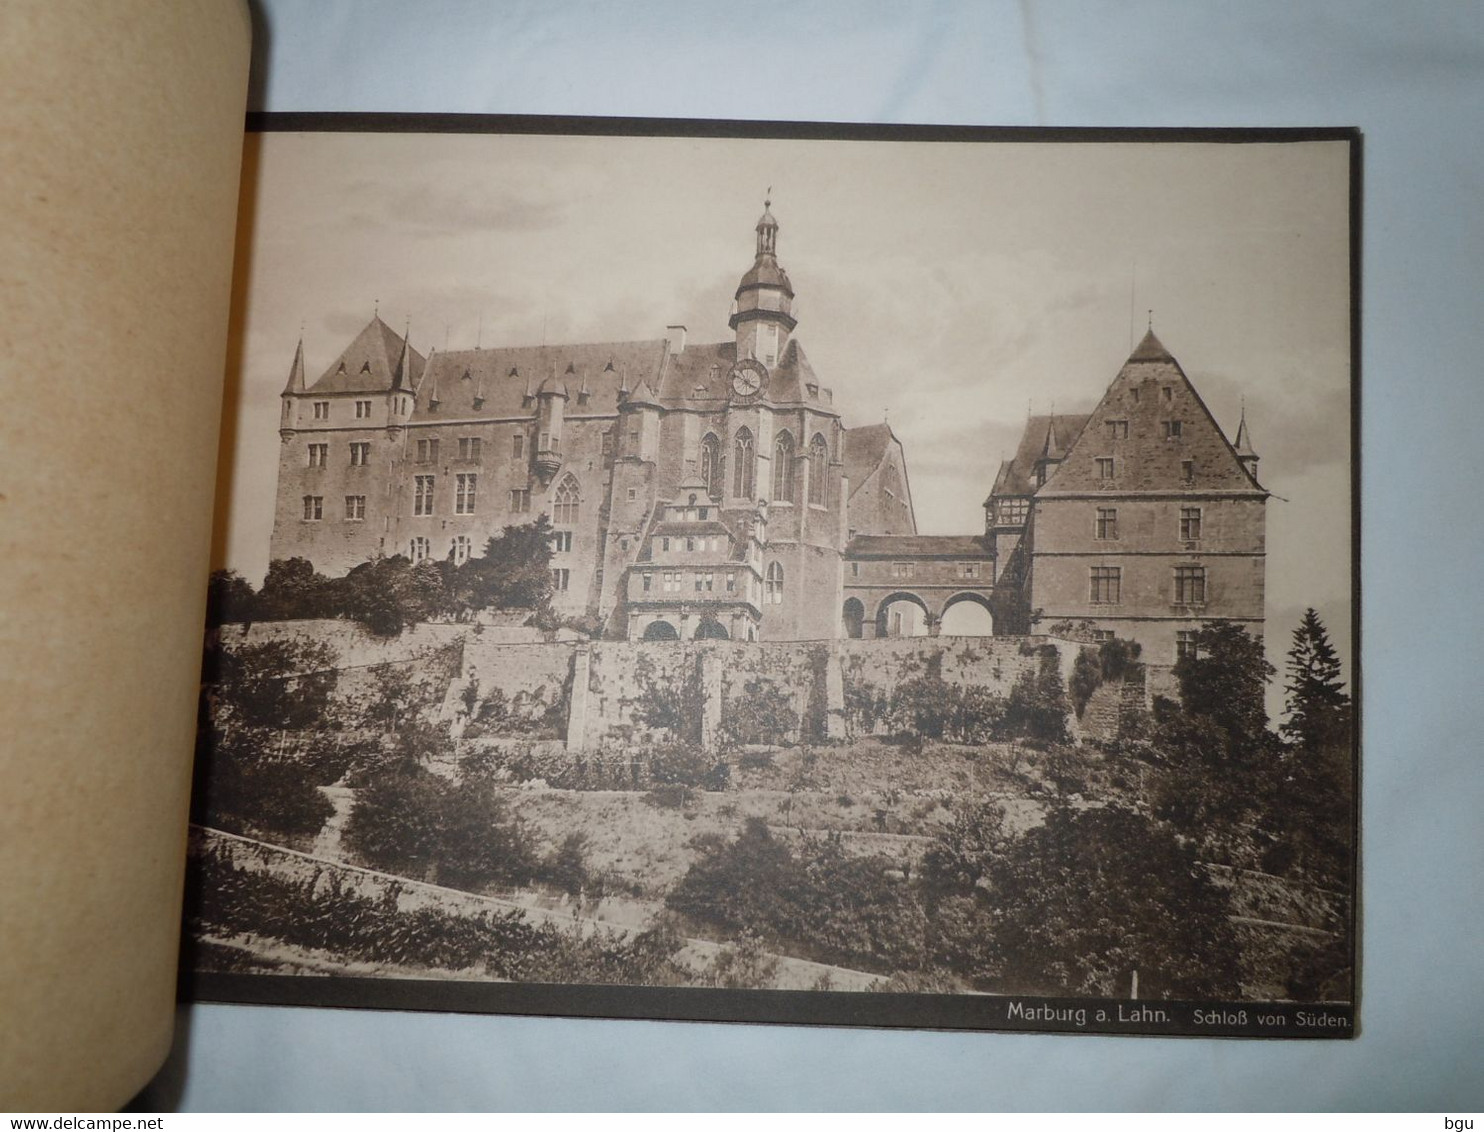 Marburg a. d. Lahn (Allemagne) - Carnet de 10 photos - Dimension 23 cm x 17 cm